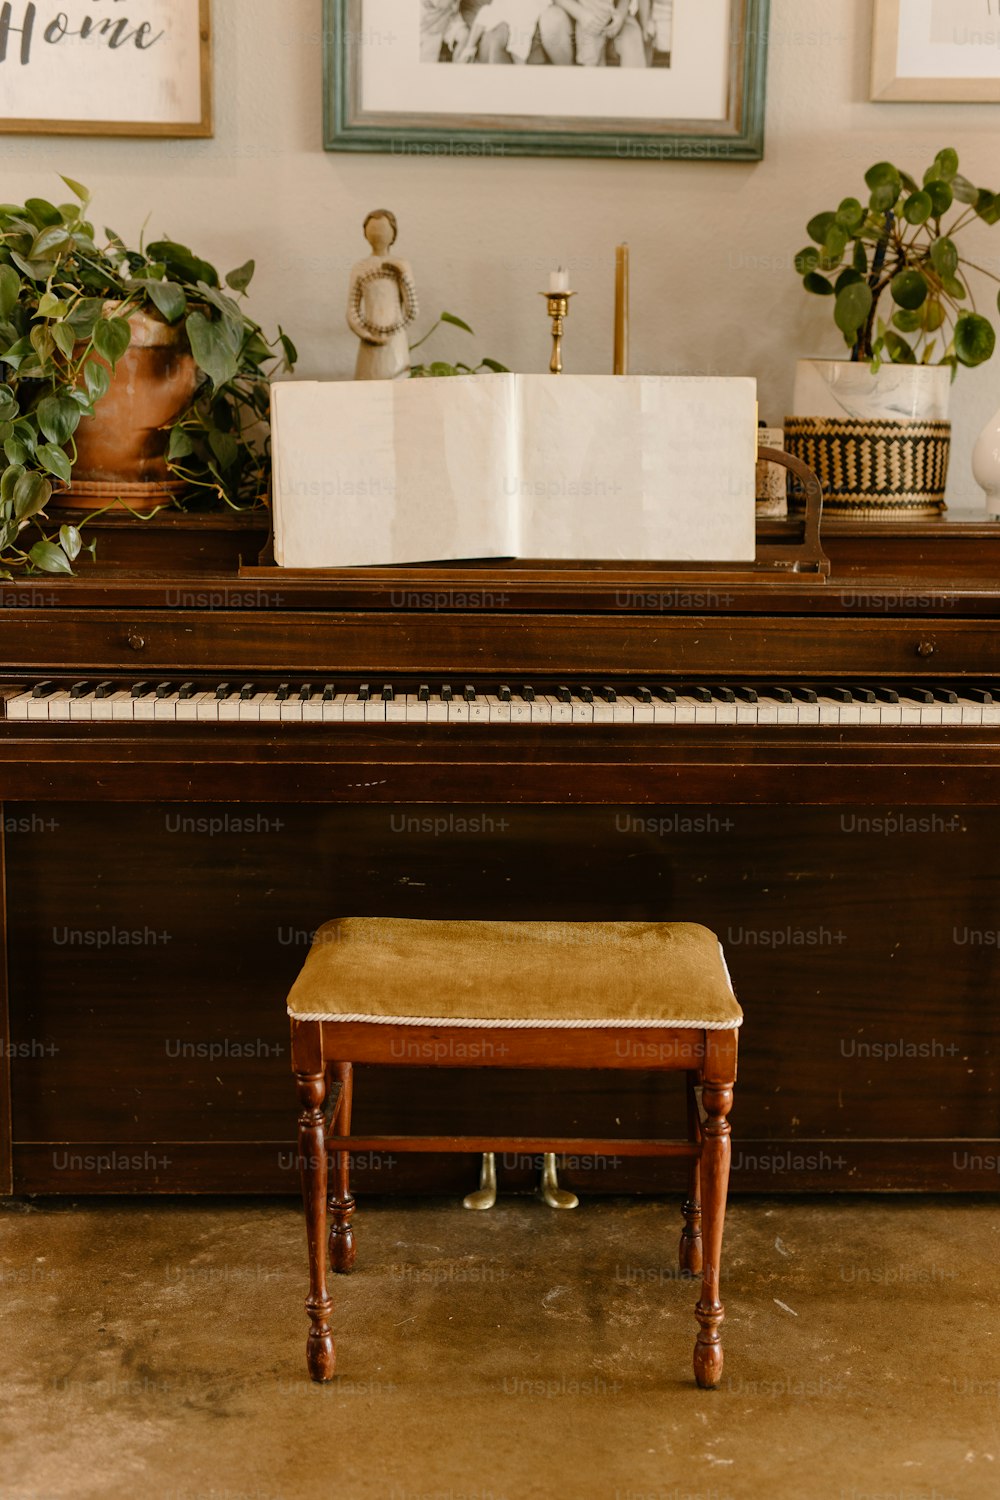 um piano sentado em frente a uma imagem de uma planta